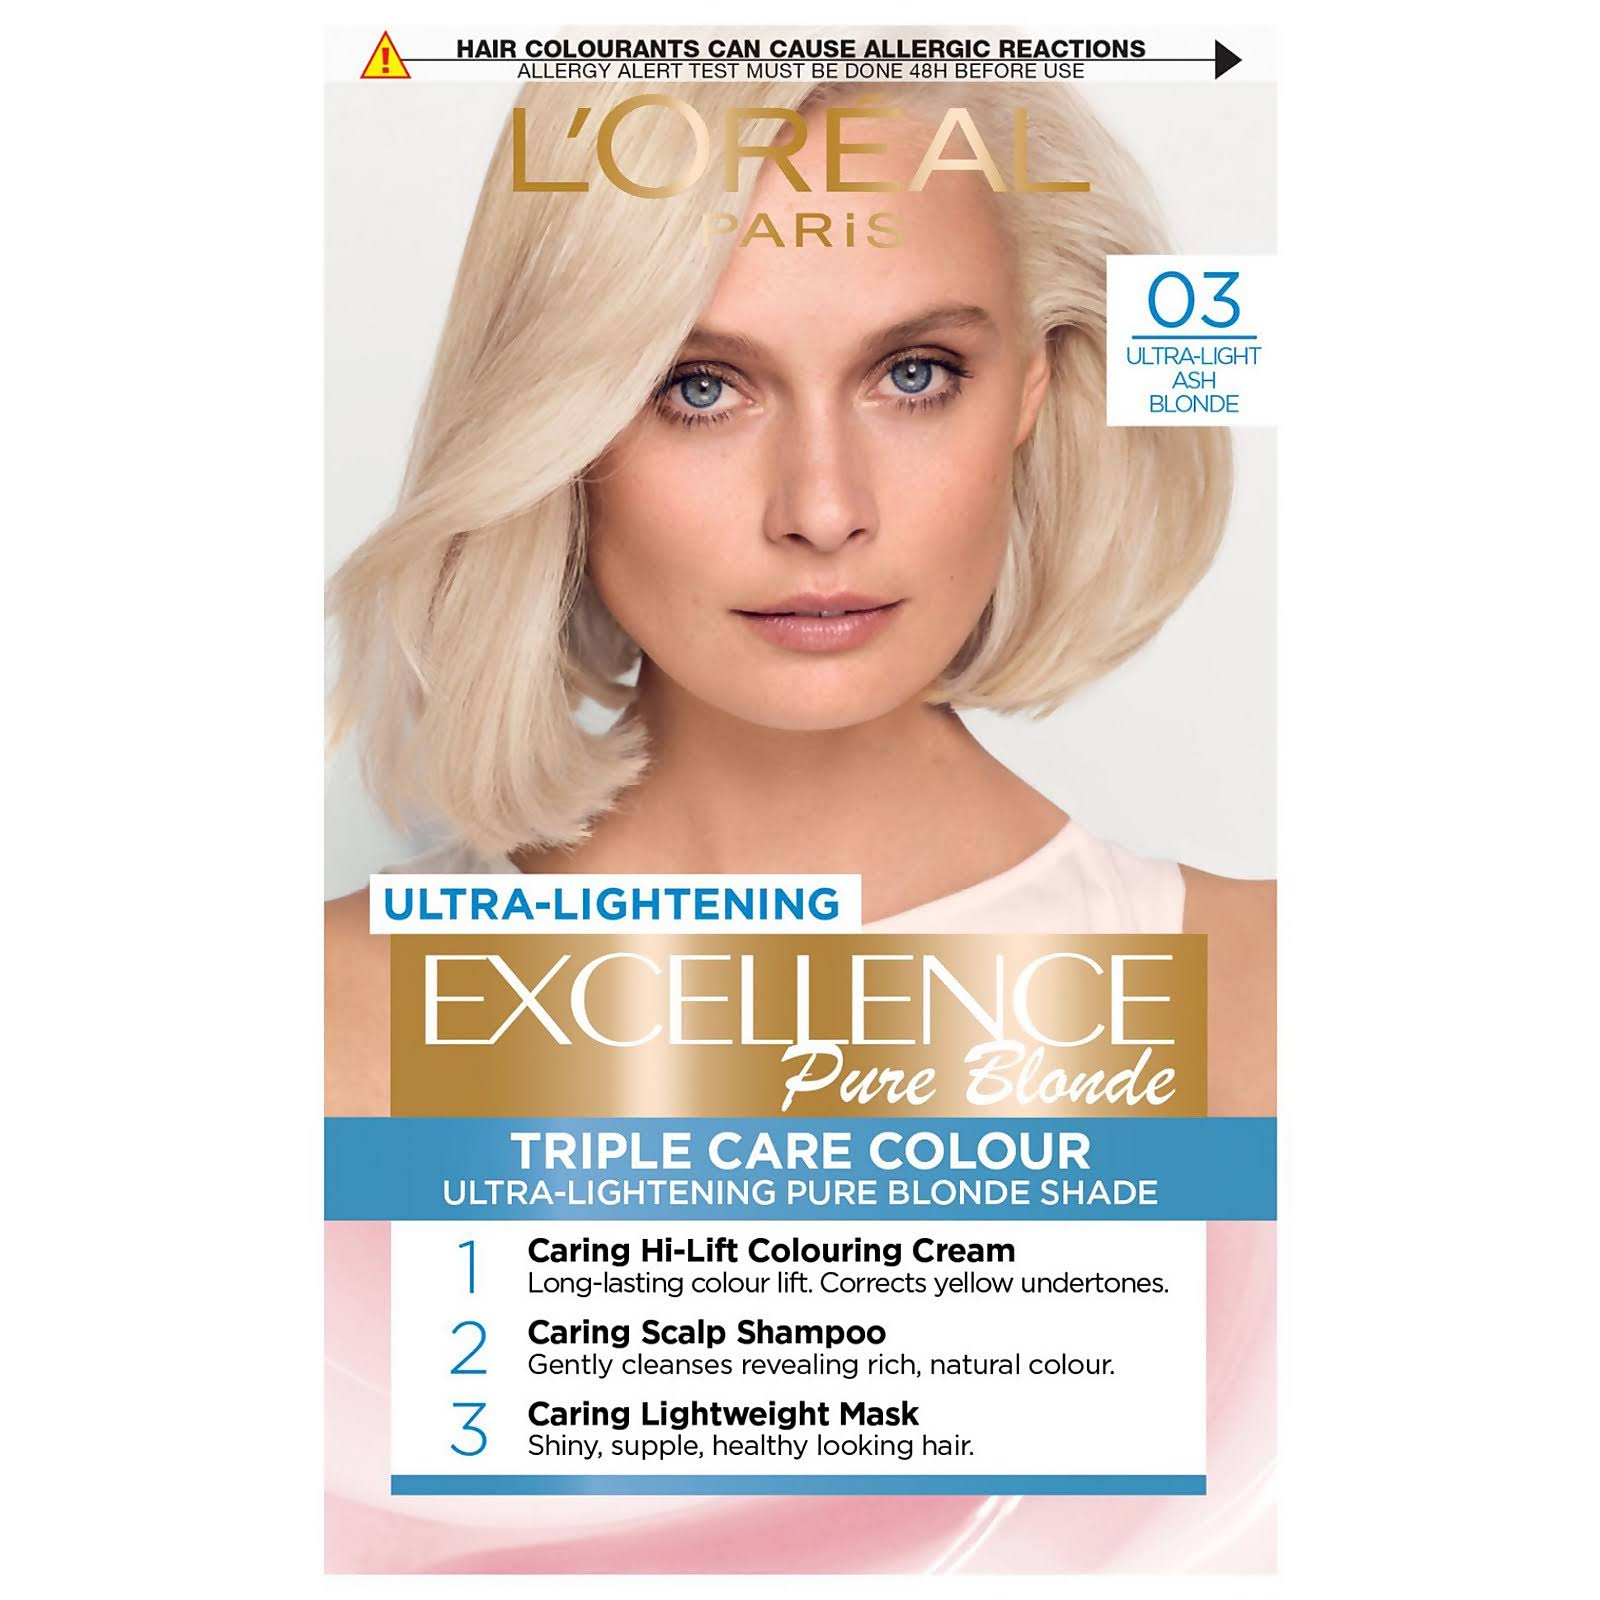 L'Oréal Paris Excellence Crème Permanent Hair Dye (Various Shades) - 03 Ultra-light Ash Blonde